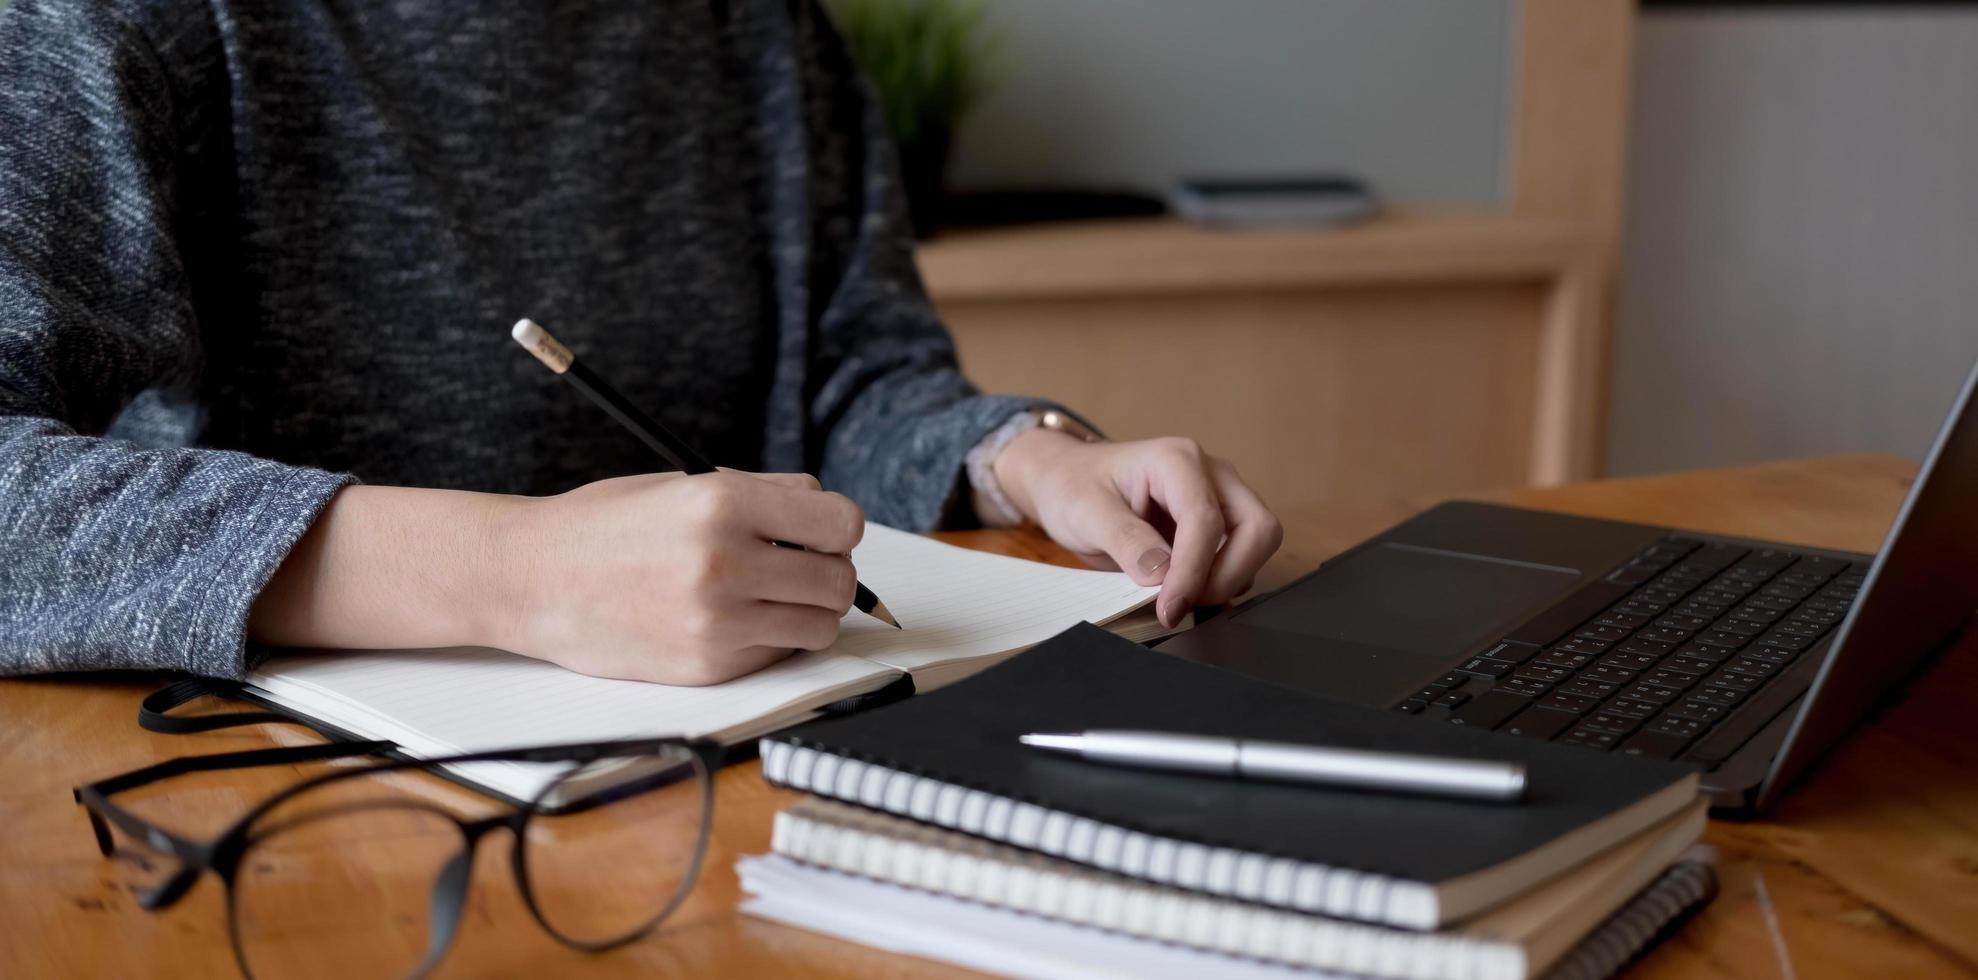 Foto recortada de la mano de mujer escribiendo haciendo lista tomando notas en el bloc de notas trabajando o aprendiendo en línea con un portátil en casa